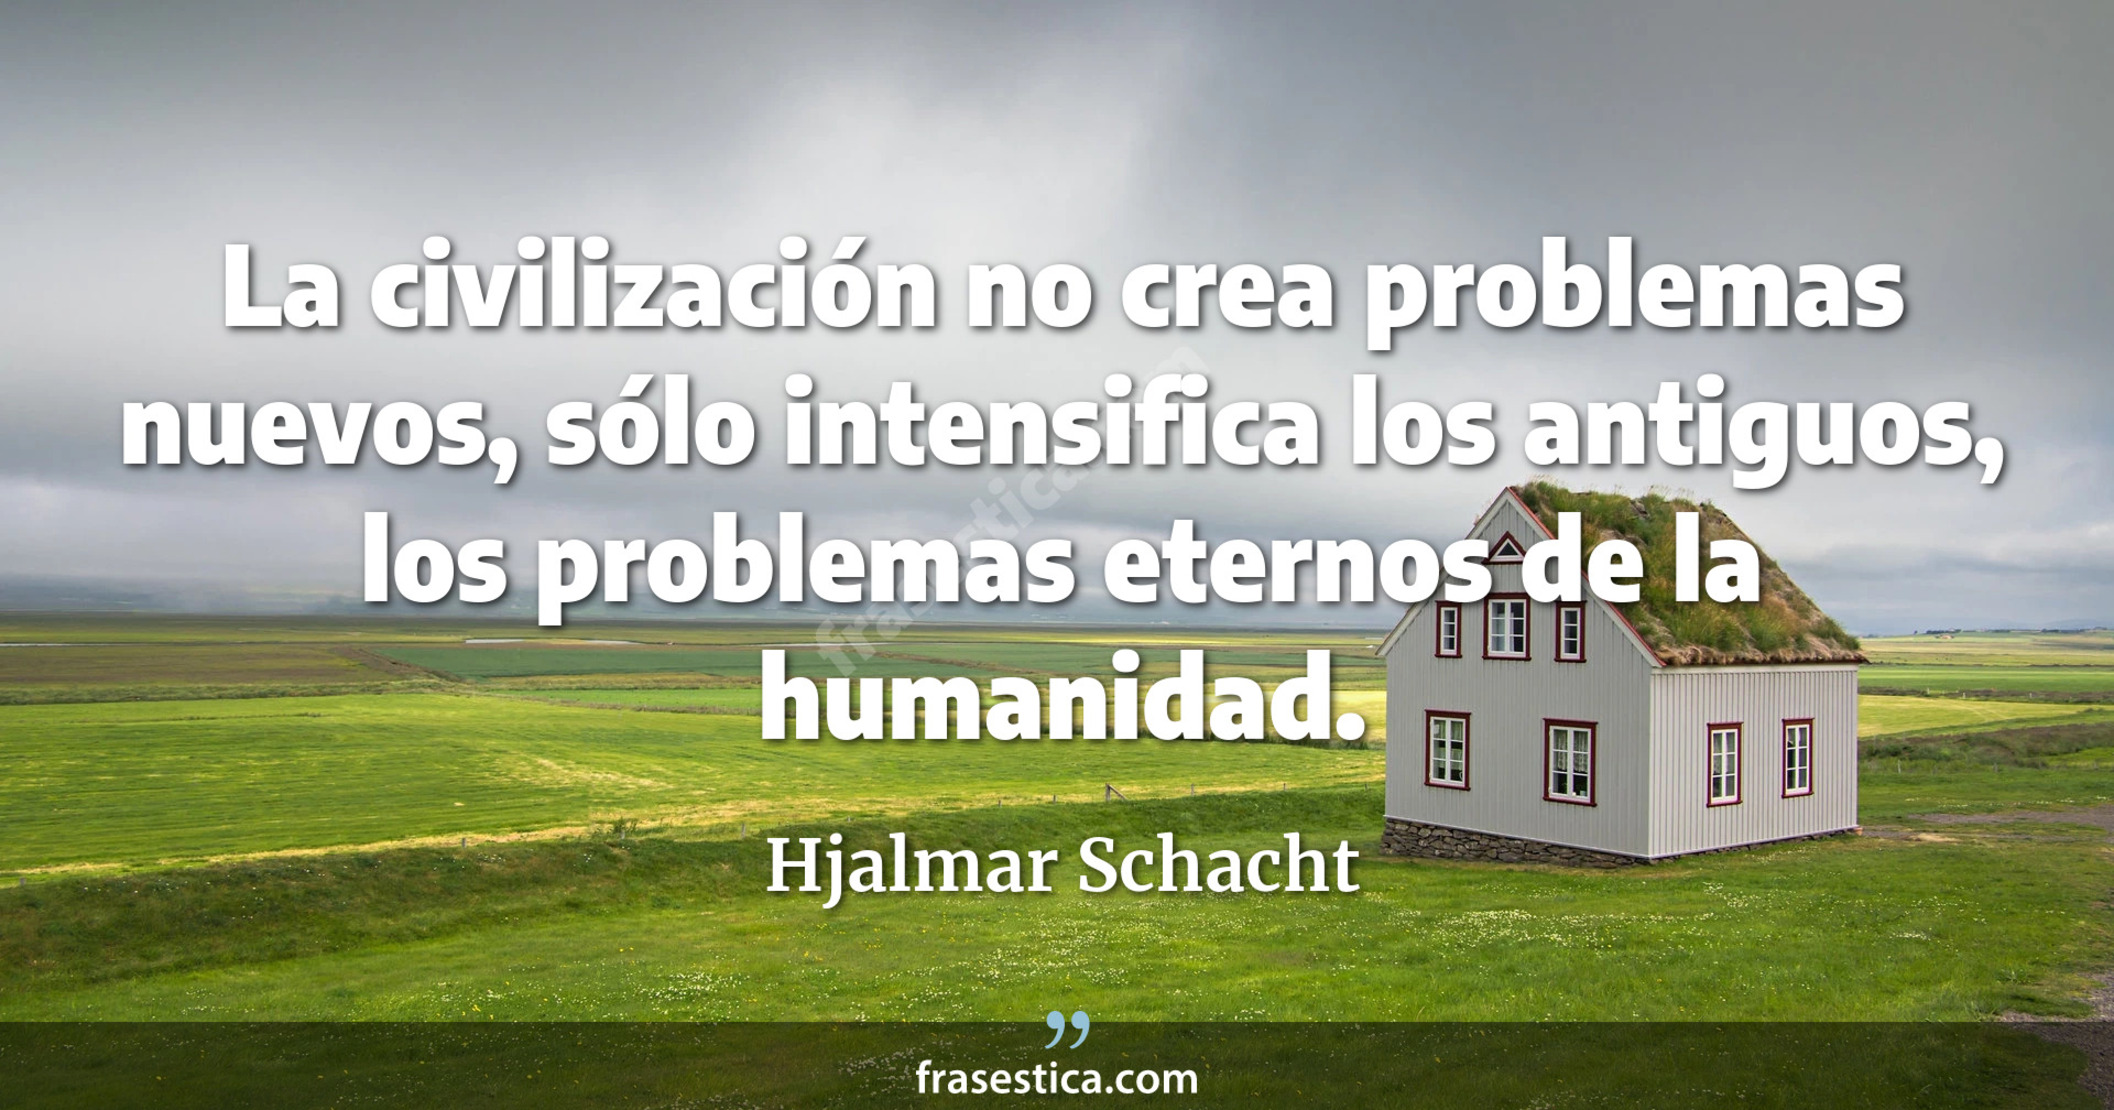 La civilización no crea problemas nuevos, sólo intensifica los antiguos, los problemas eternos de la humanidad. - Hjalmar Schacht